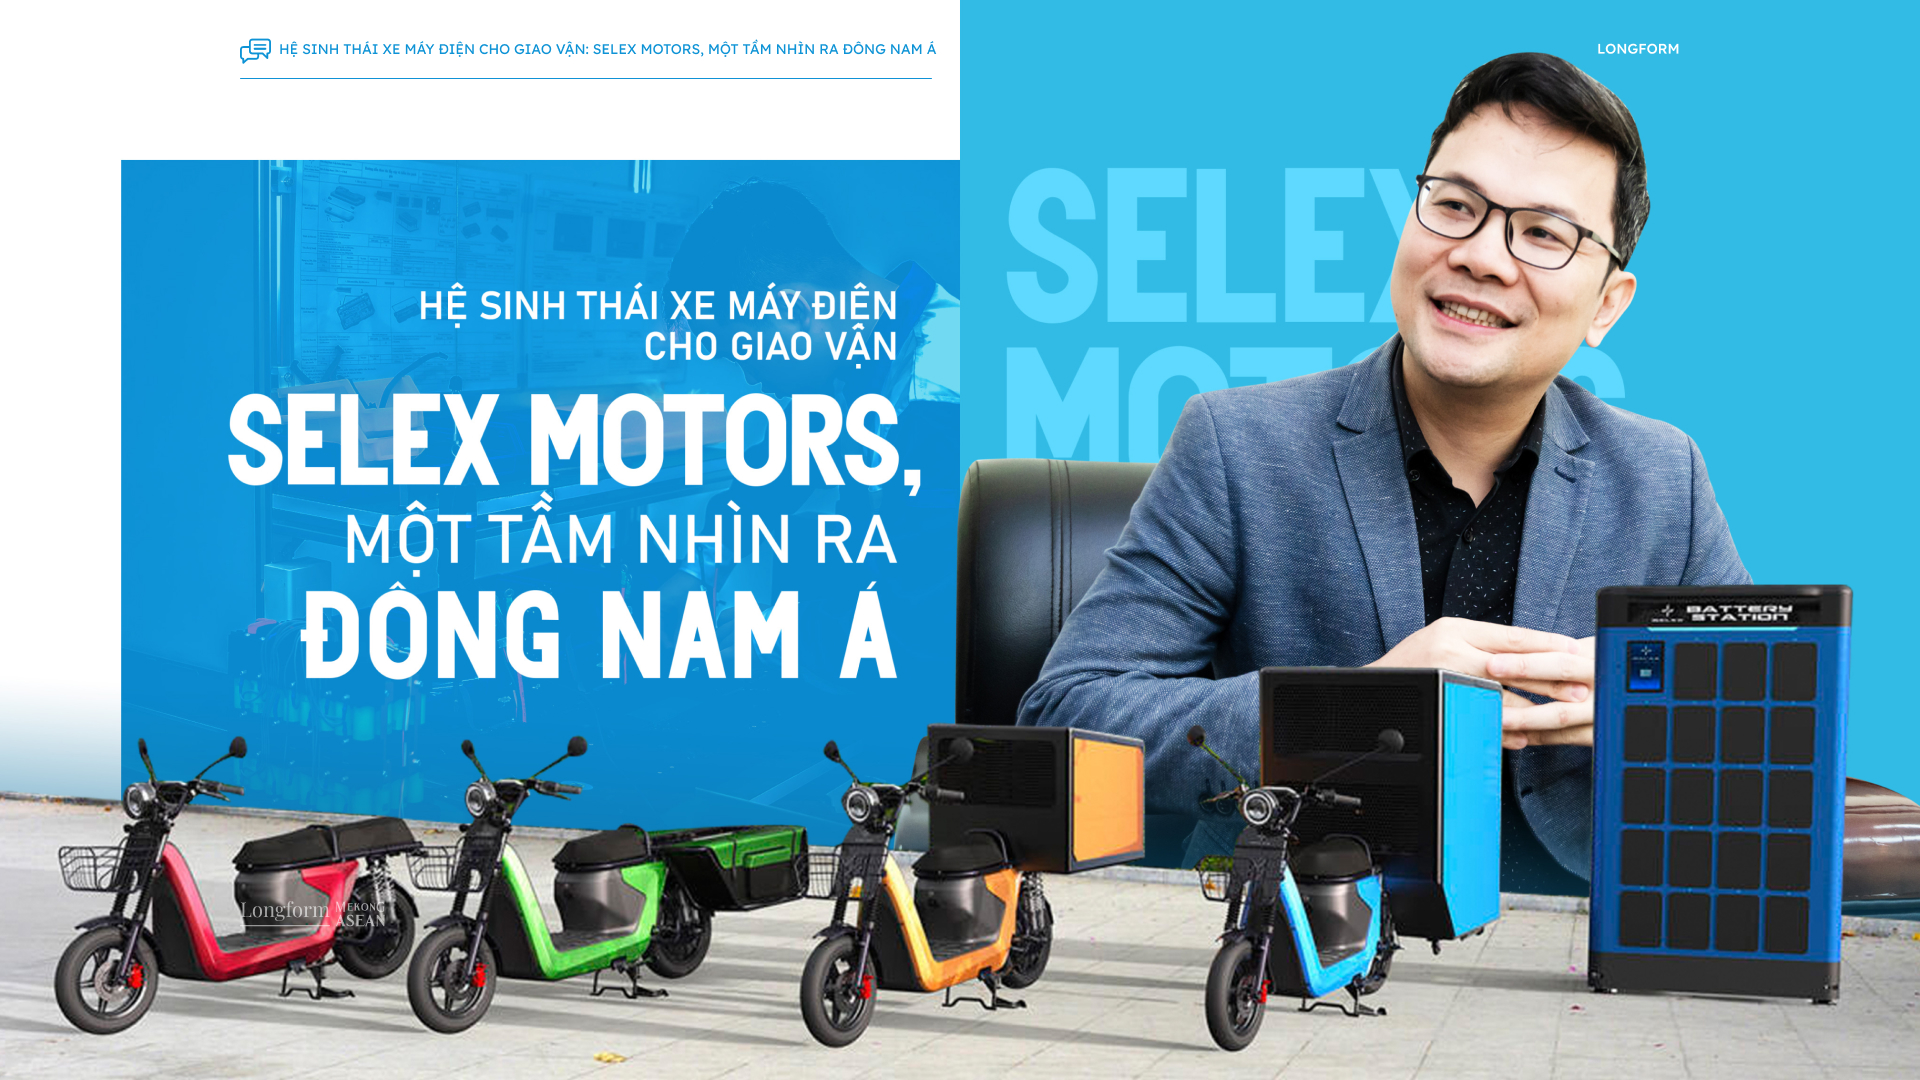 Hệ sinh thái xe máy điện cho giao vận Selex Motors, một tầm nhìn ra Đông Nam Á 